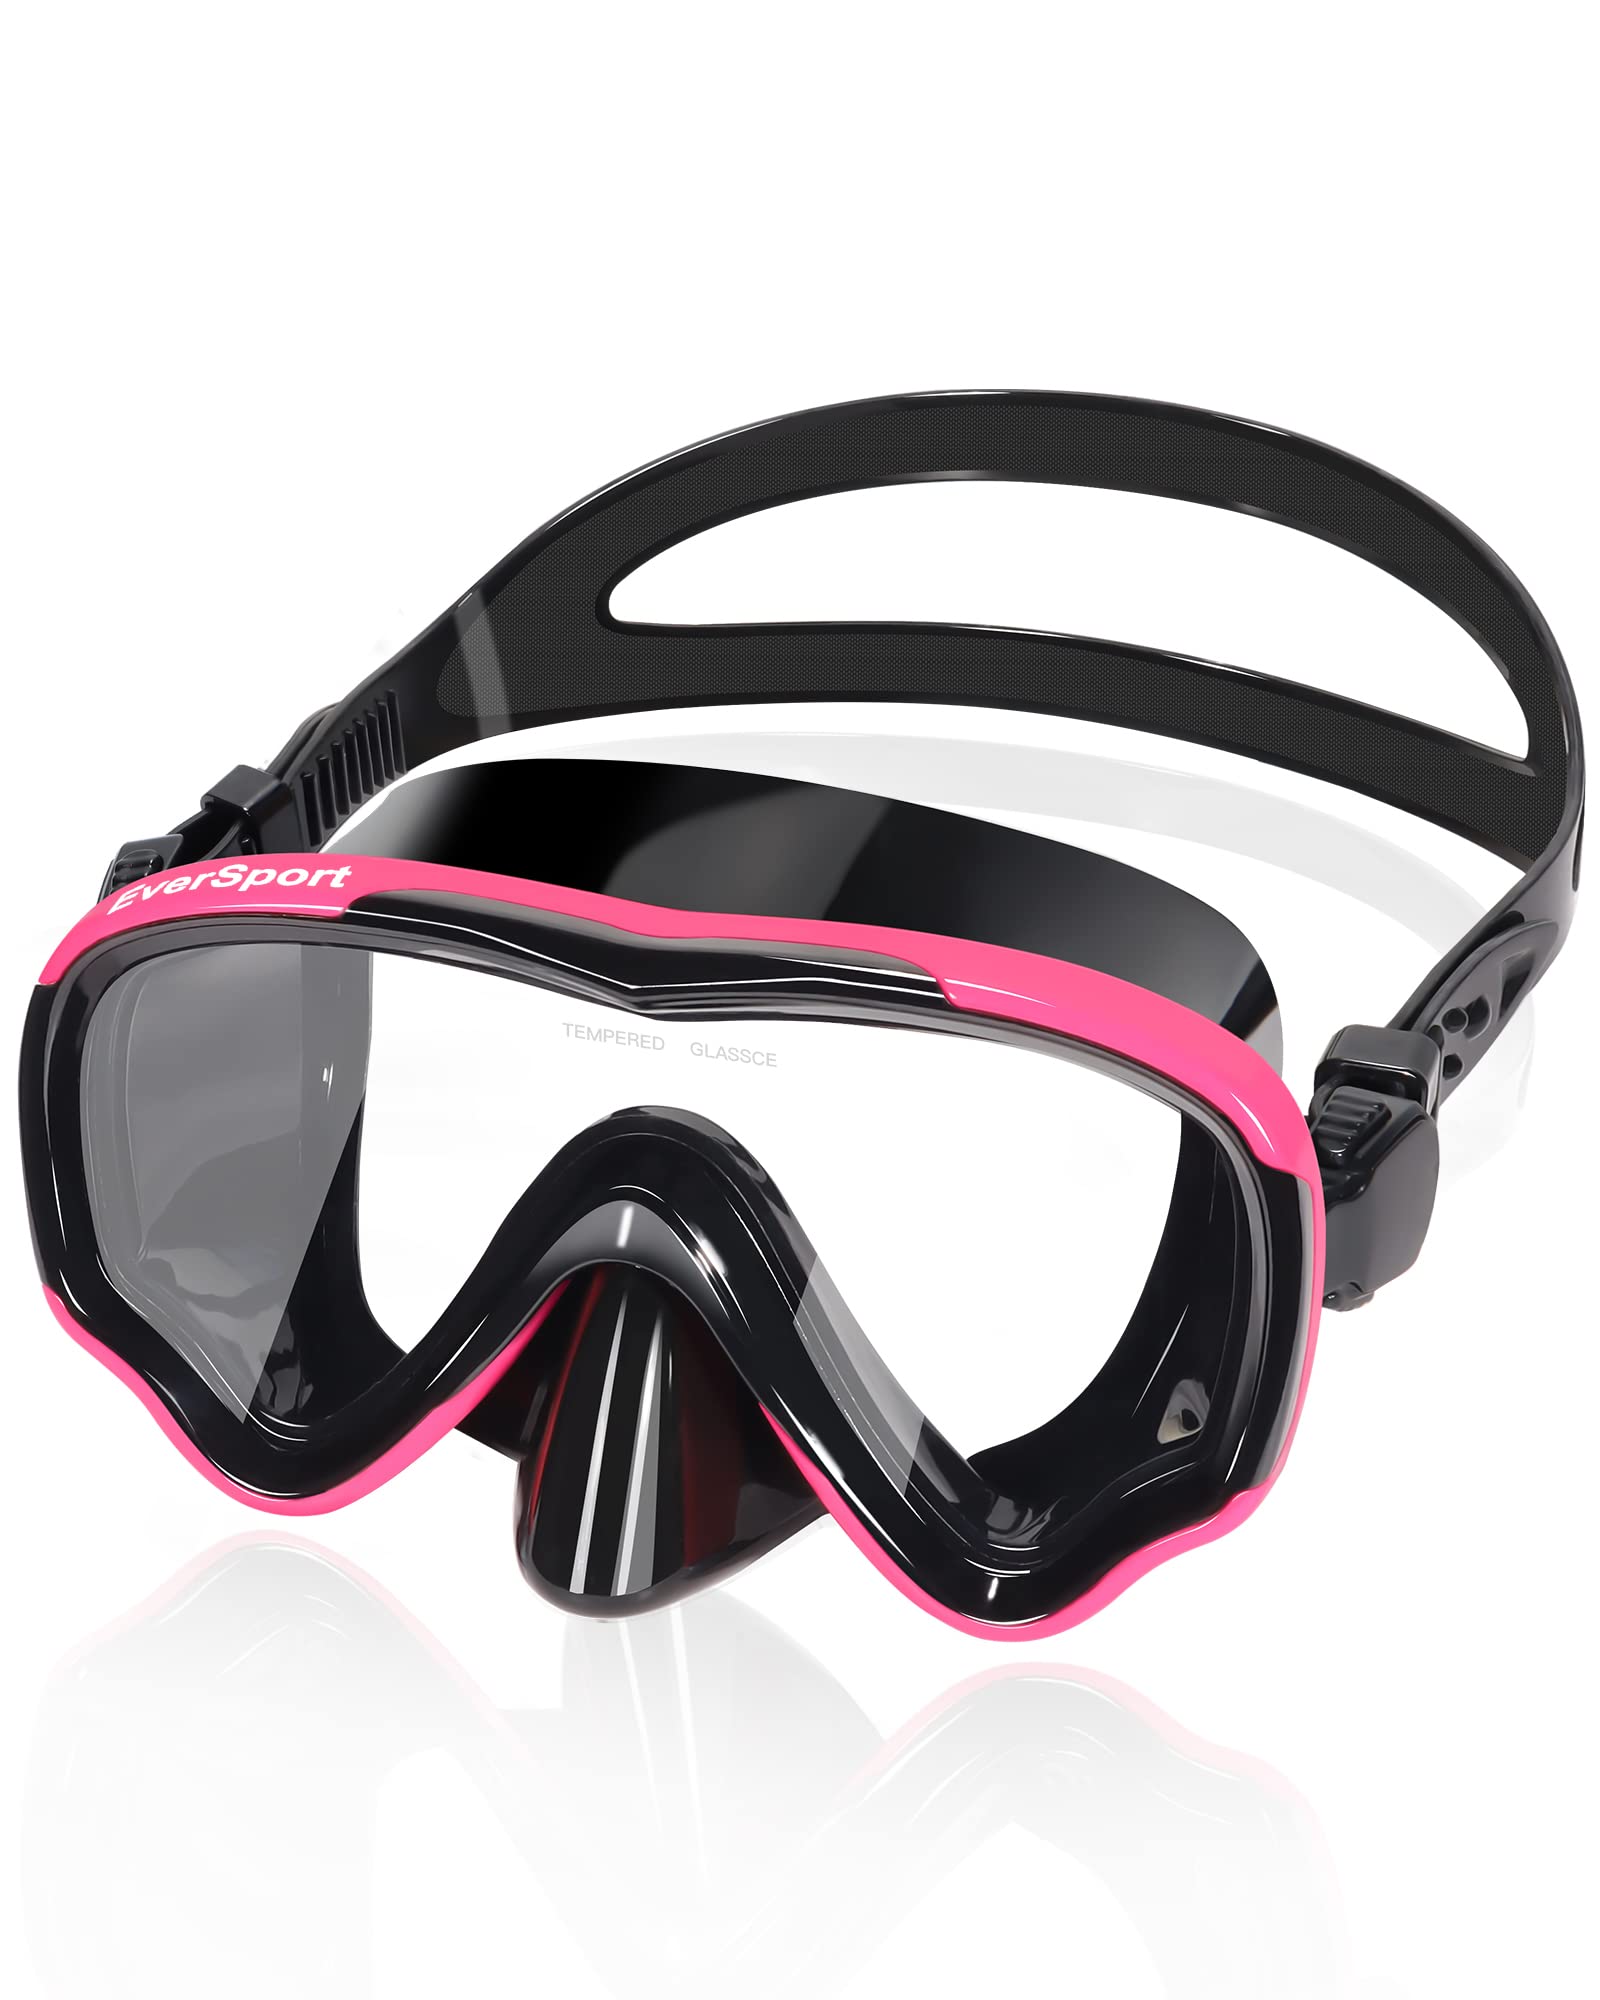 EverSport Swim Goggles